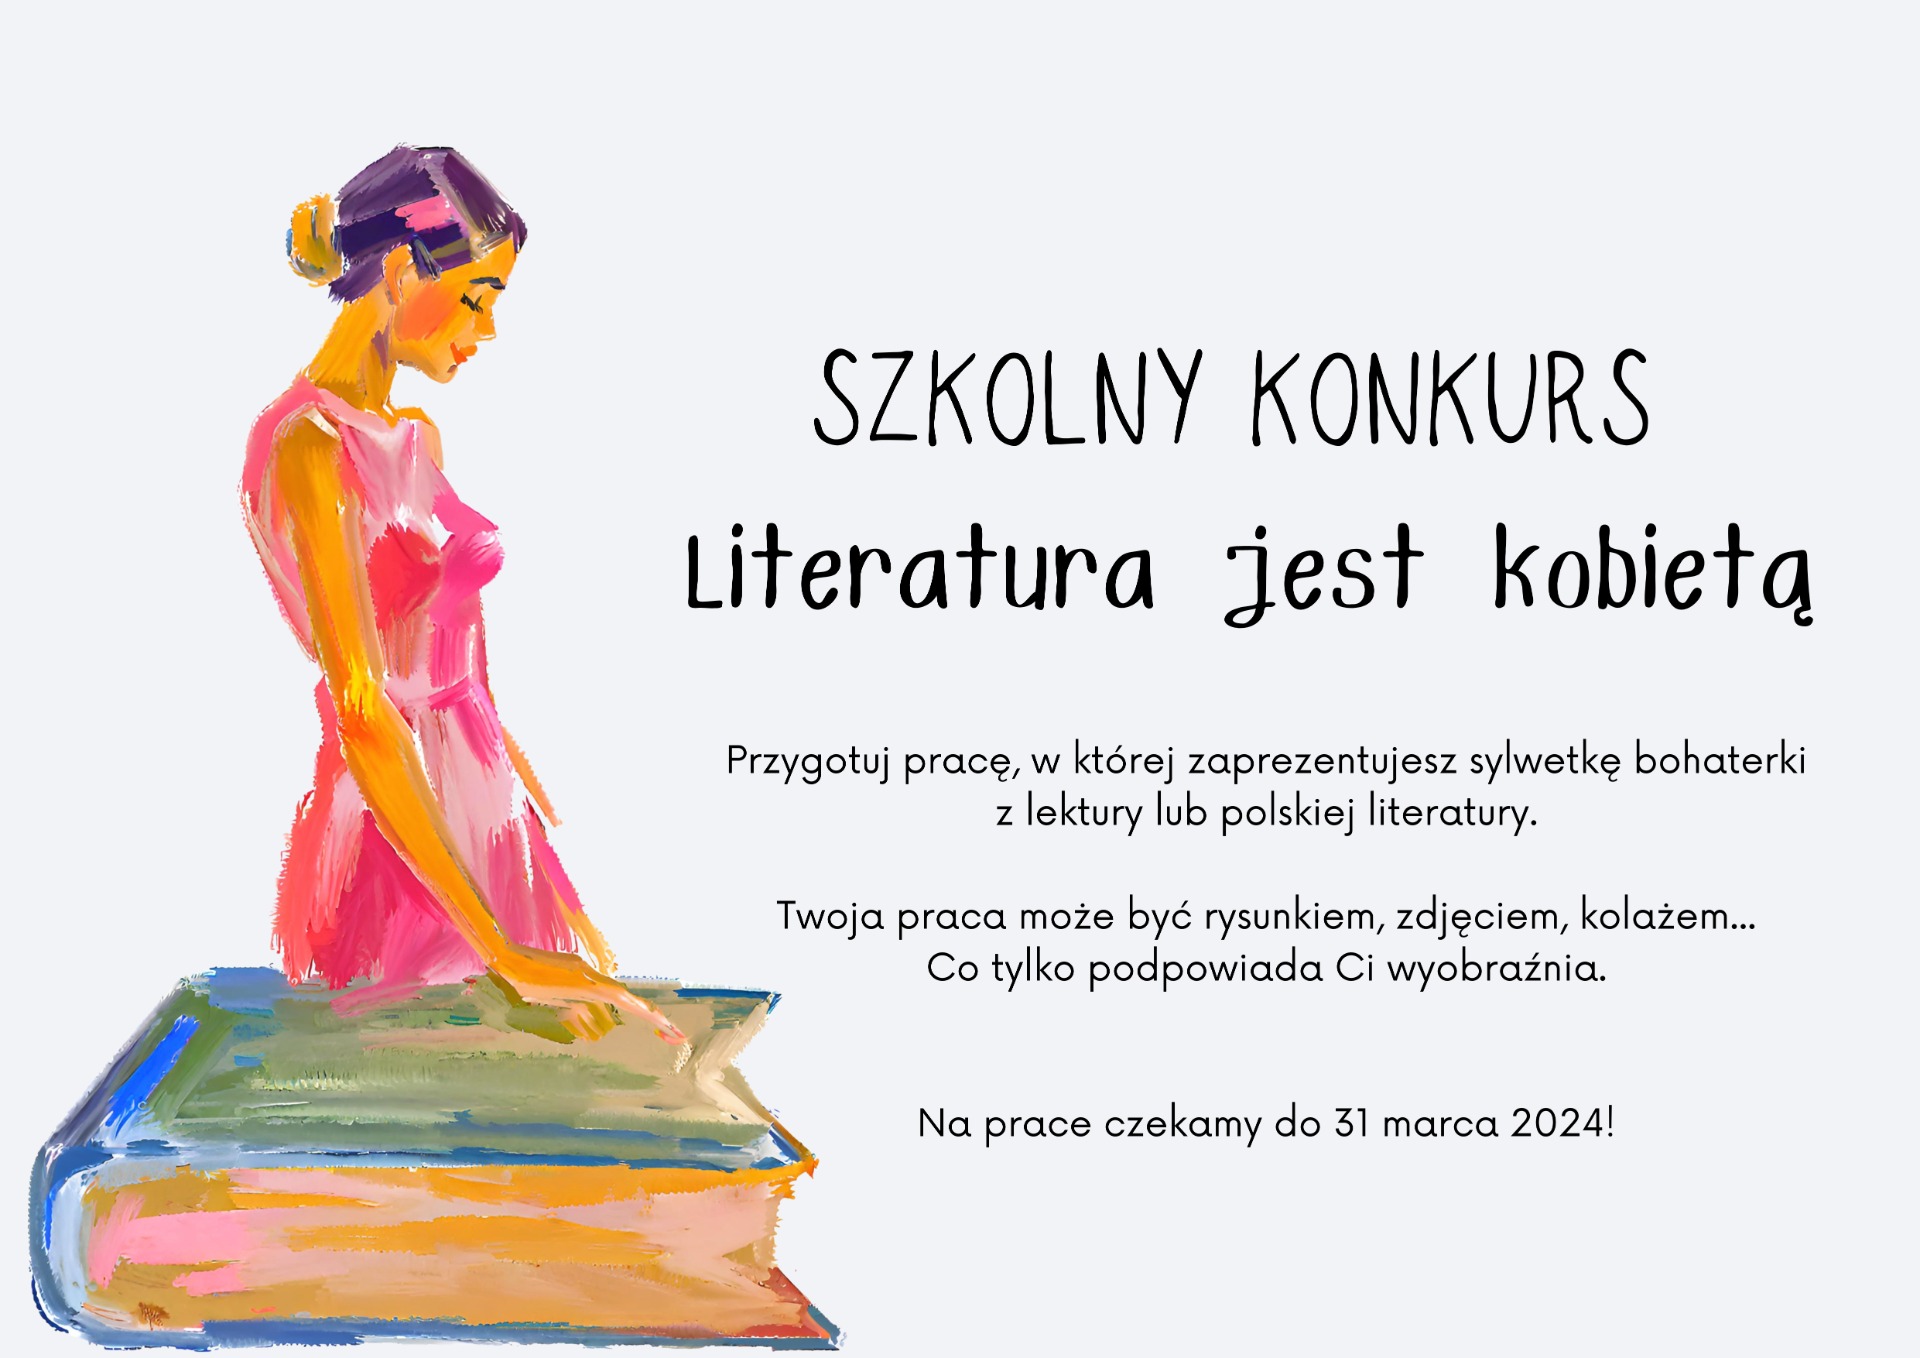 Szkolny Konkurs "Literatura jest Kobietą" - Obrazek 1